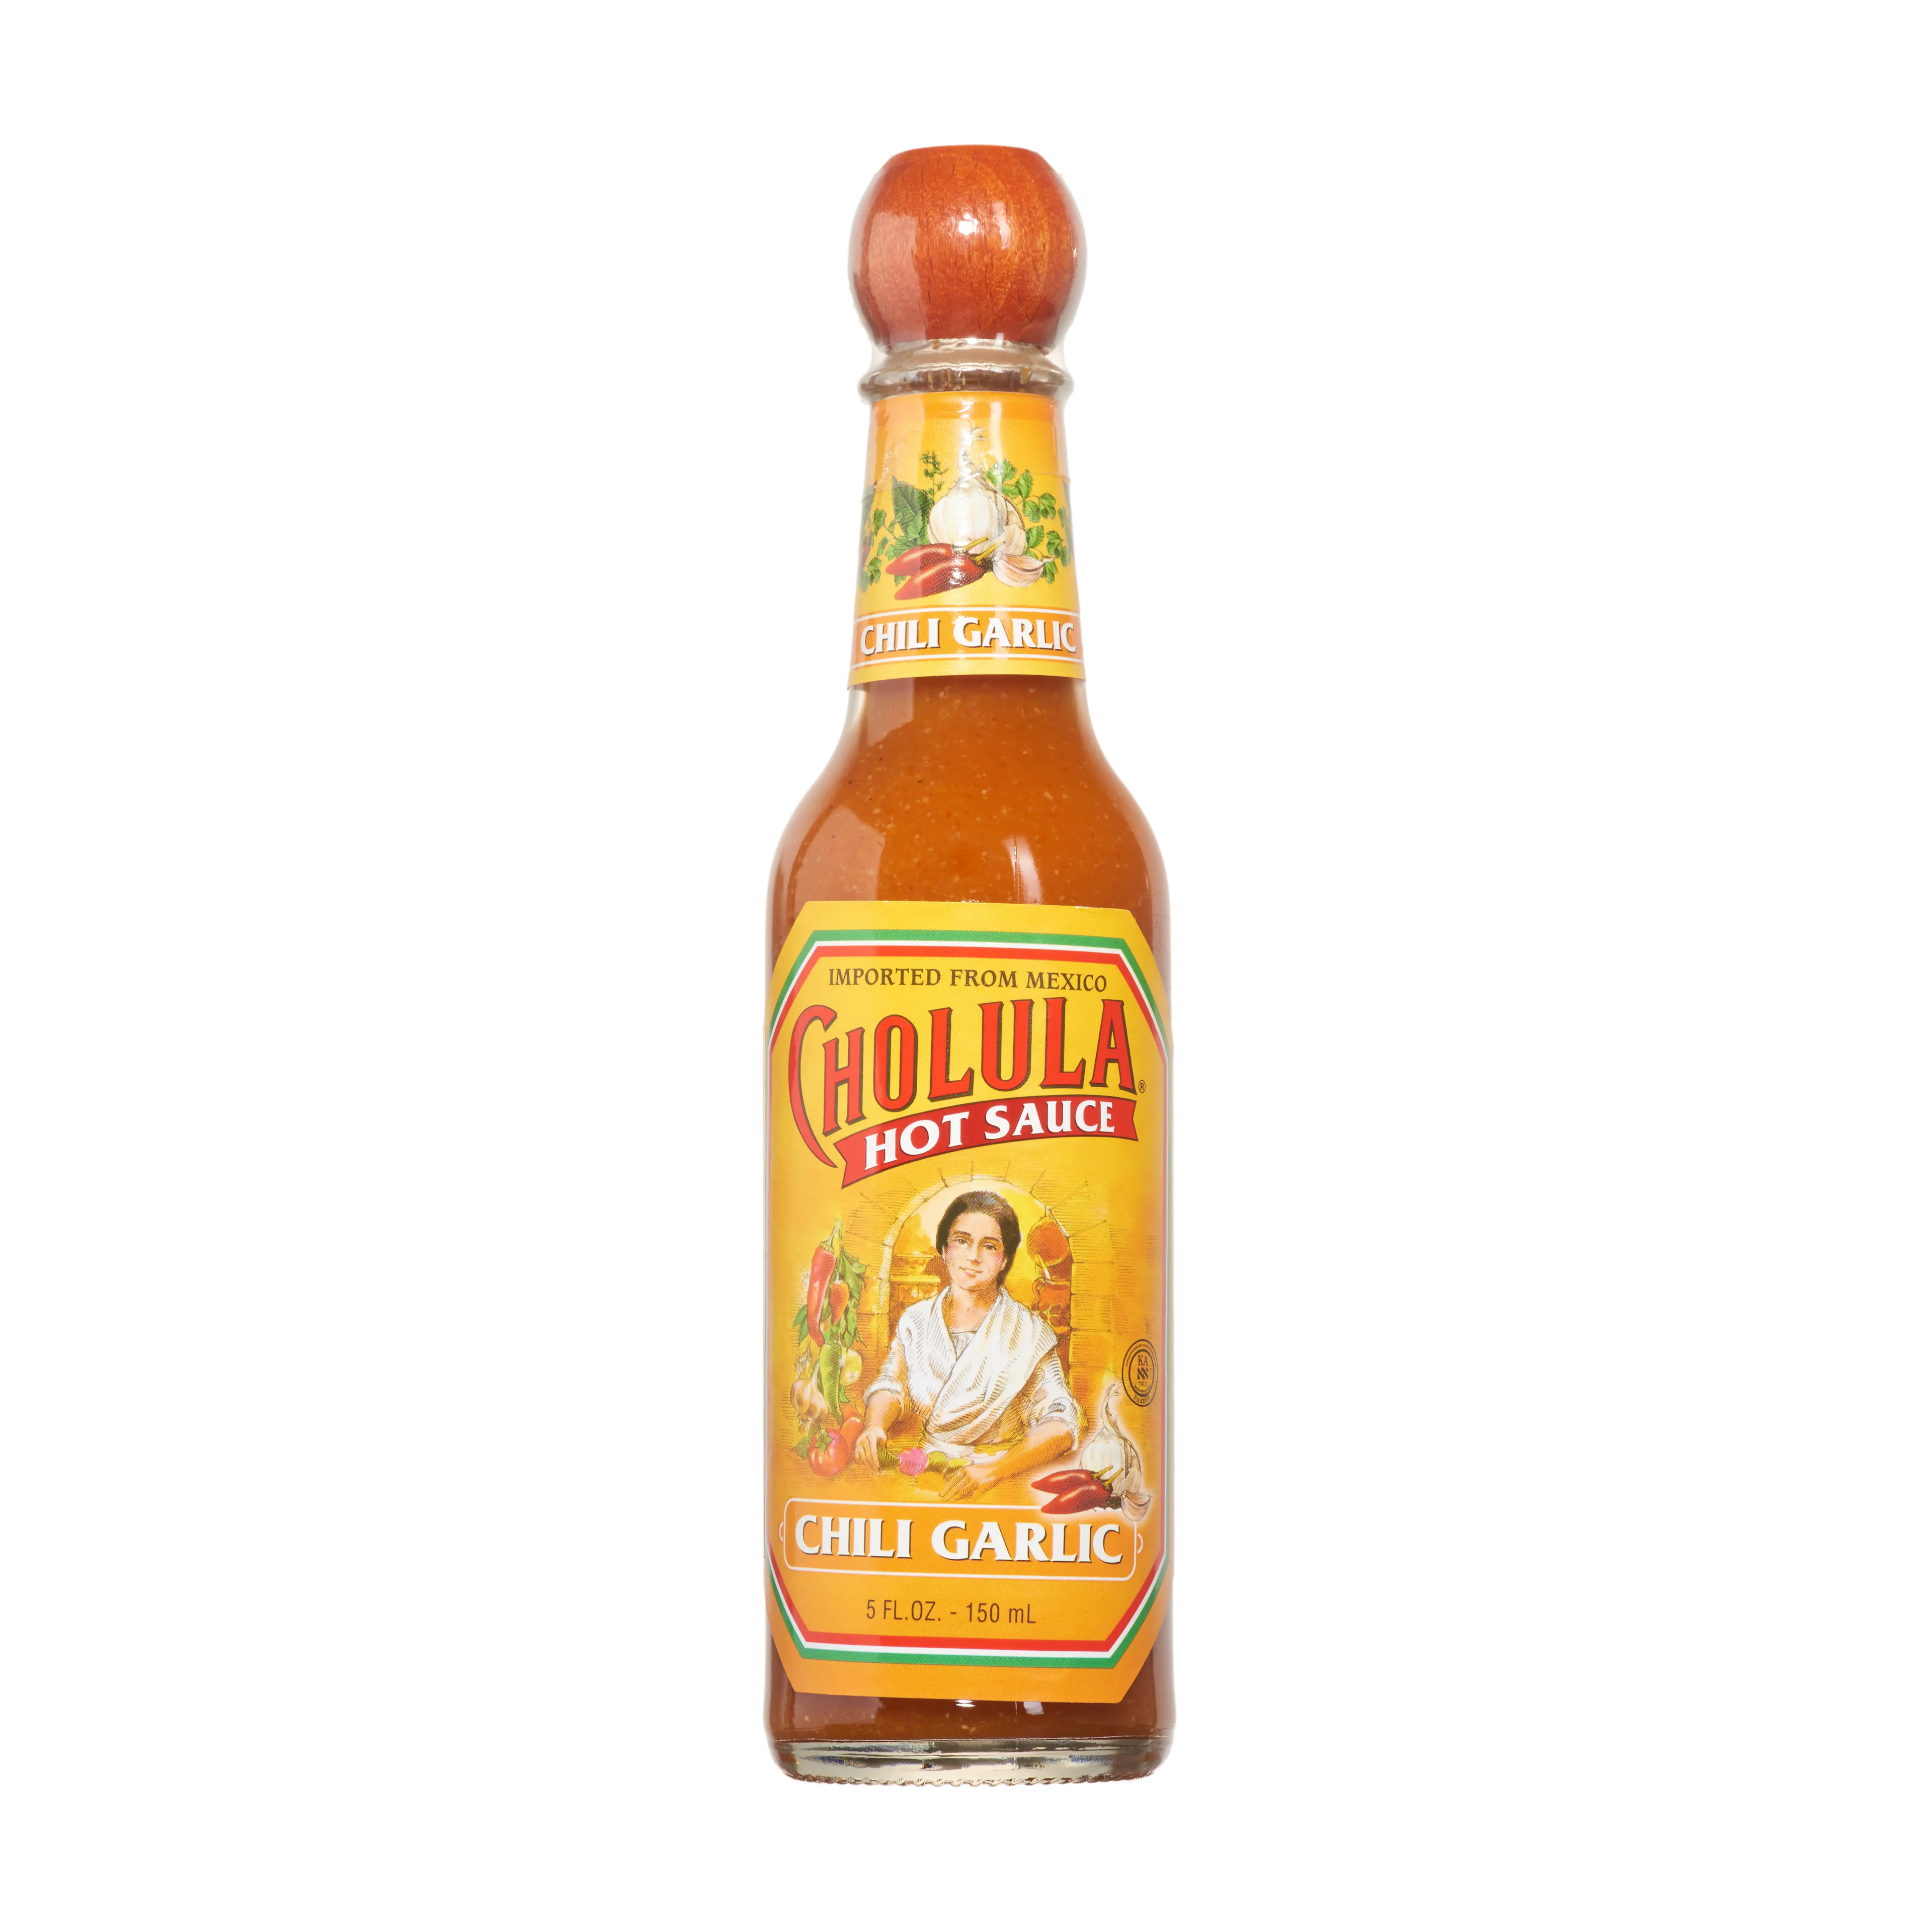 Cholula Hot Sauce Hot Sauce Chili Garlic